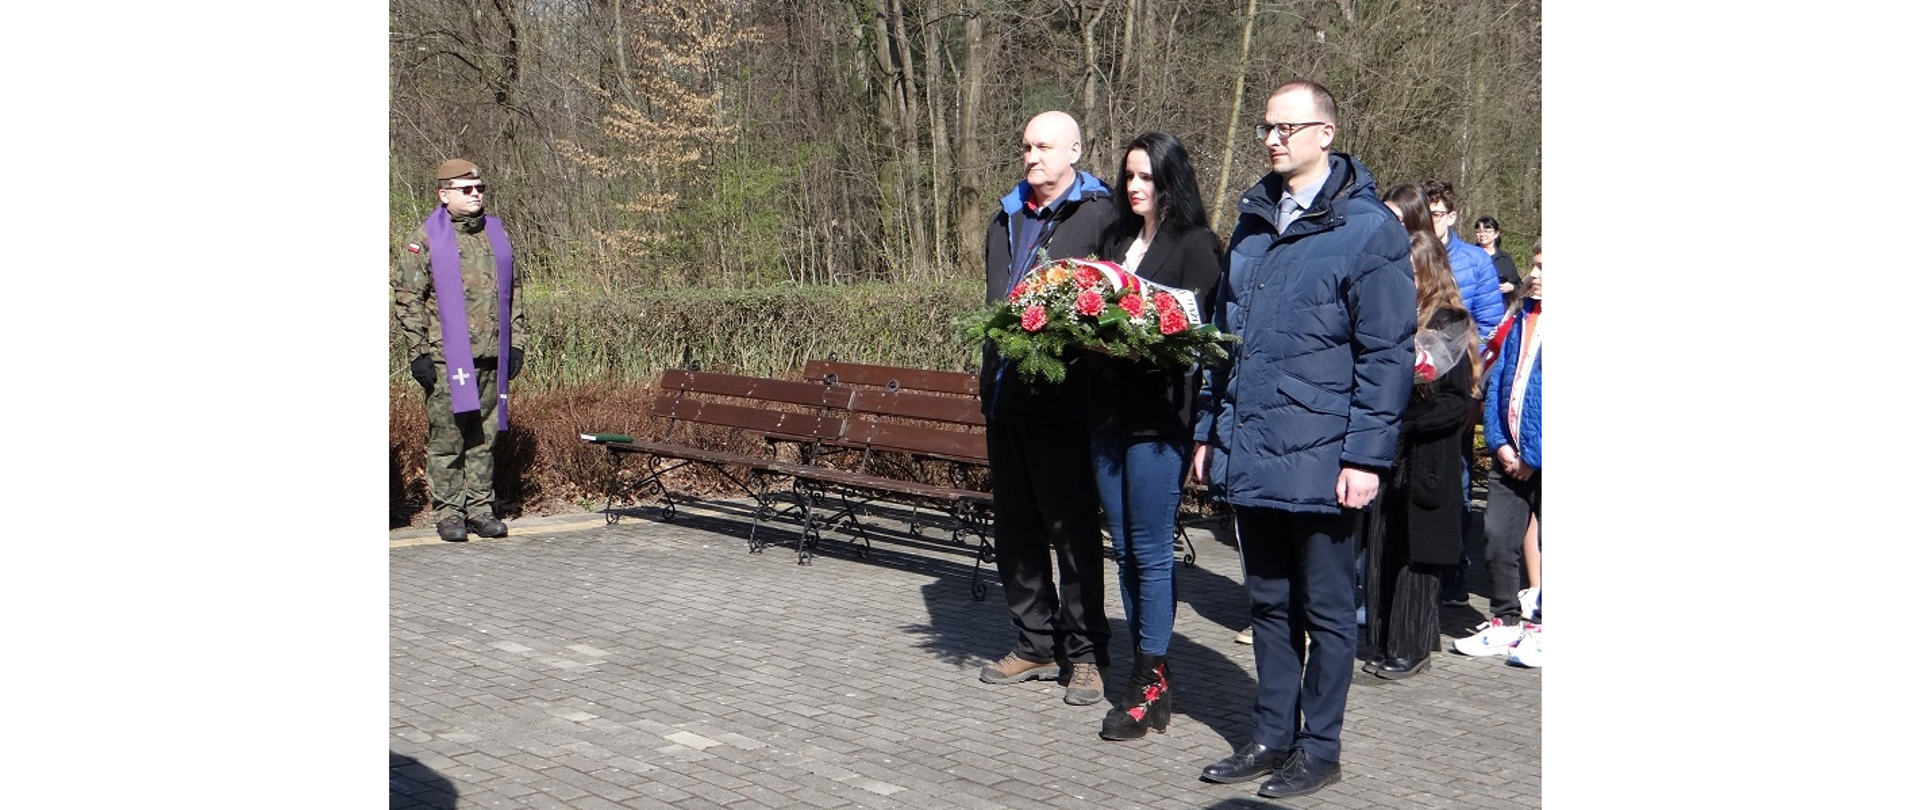 Delegacja z Gminy Hażlach przed pomnikiem ofiar niemieckiego terroru „Pod Wałką” w Cieszynie. W środku trzyosobowej grupy kobieta trzymająca wiązankę kwiatów z szarfą w barwach biało-czerwonych 